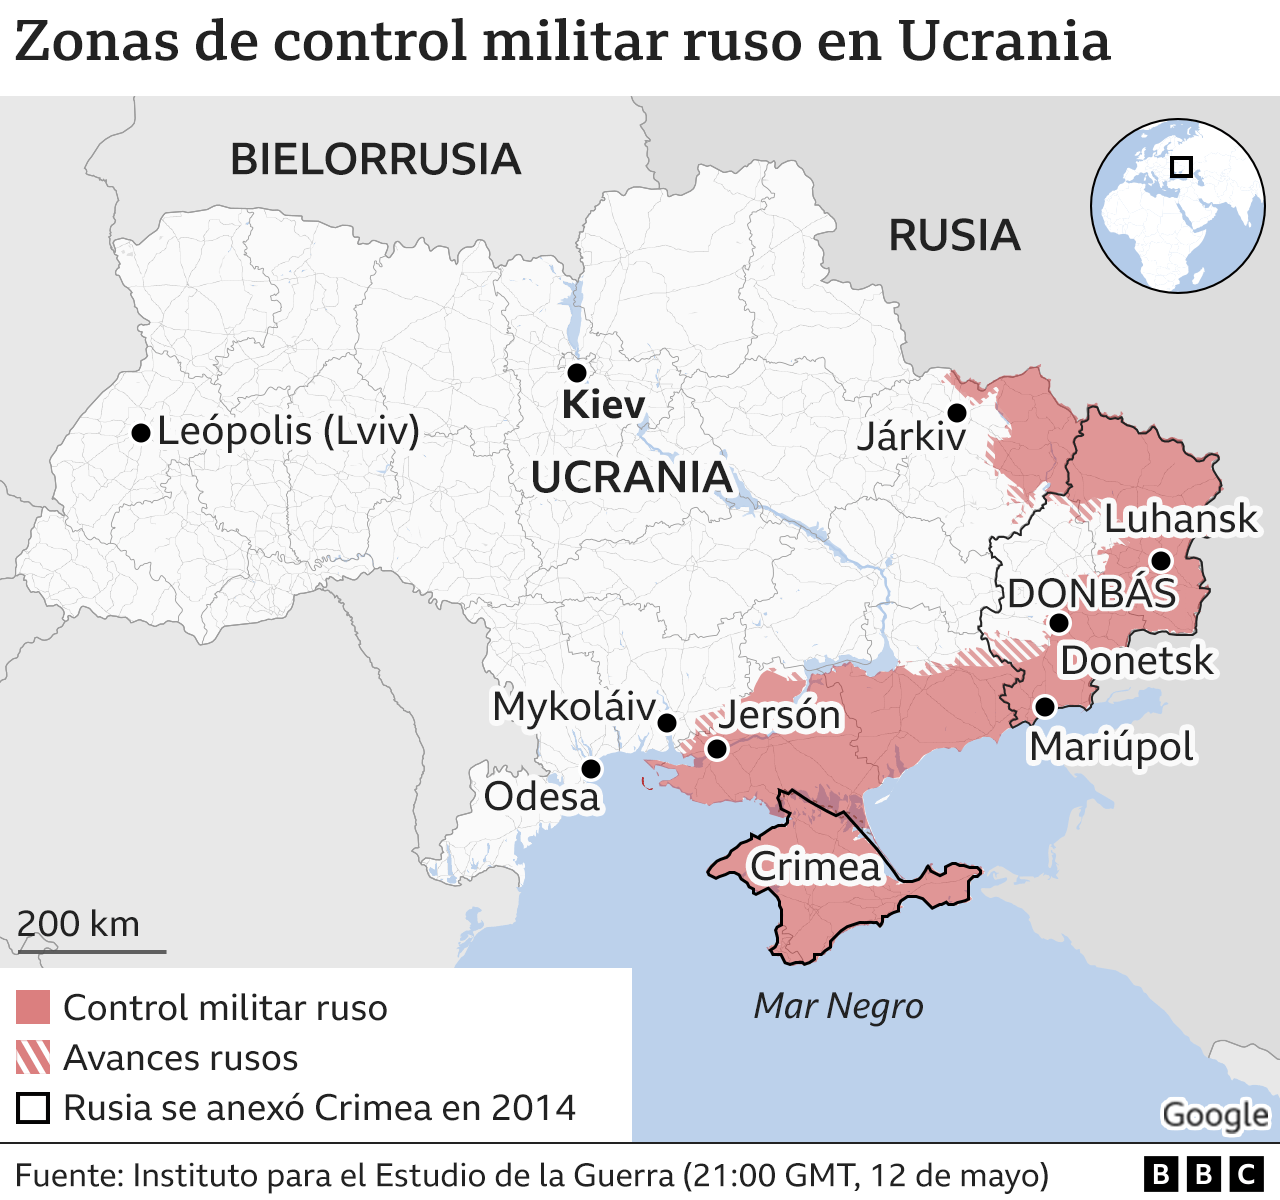 Mapa mostrando las zonas bajo control militar ruso en Ucrania